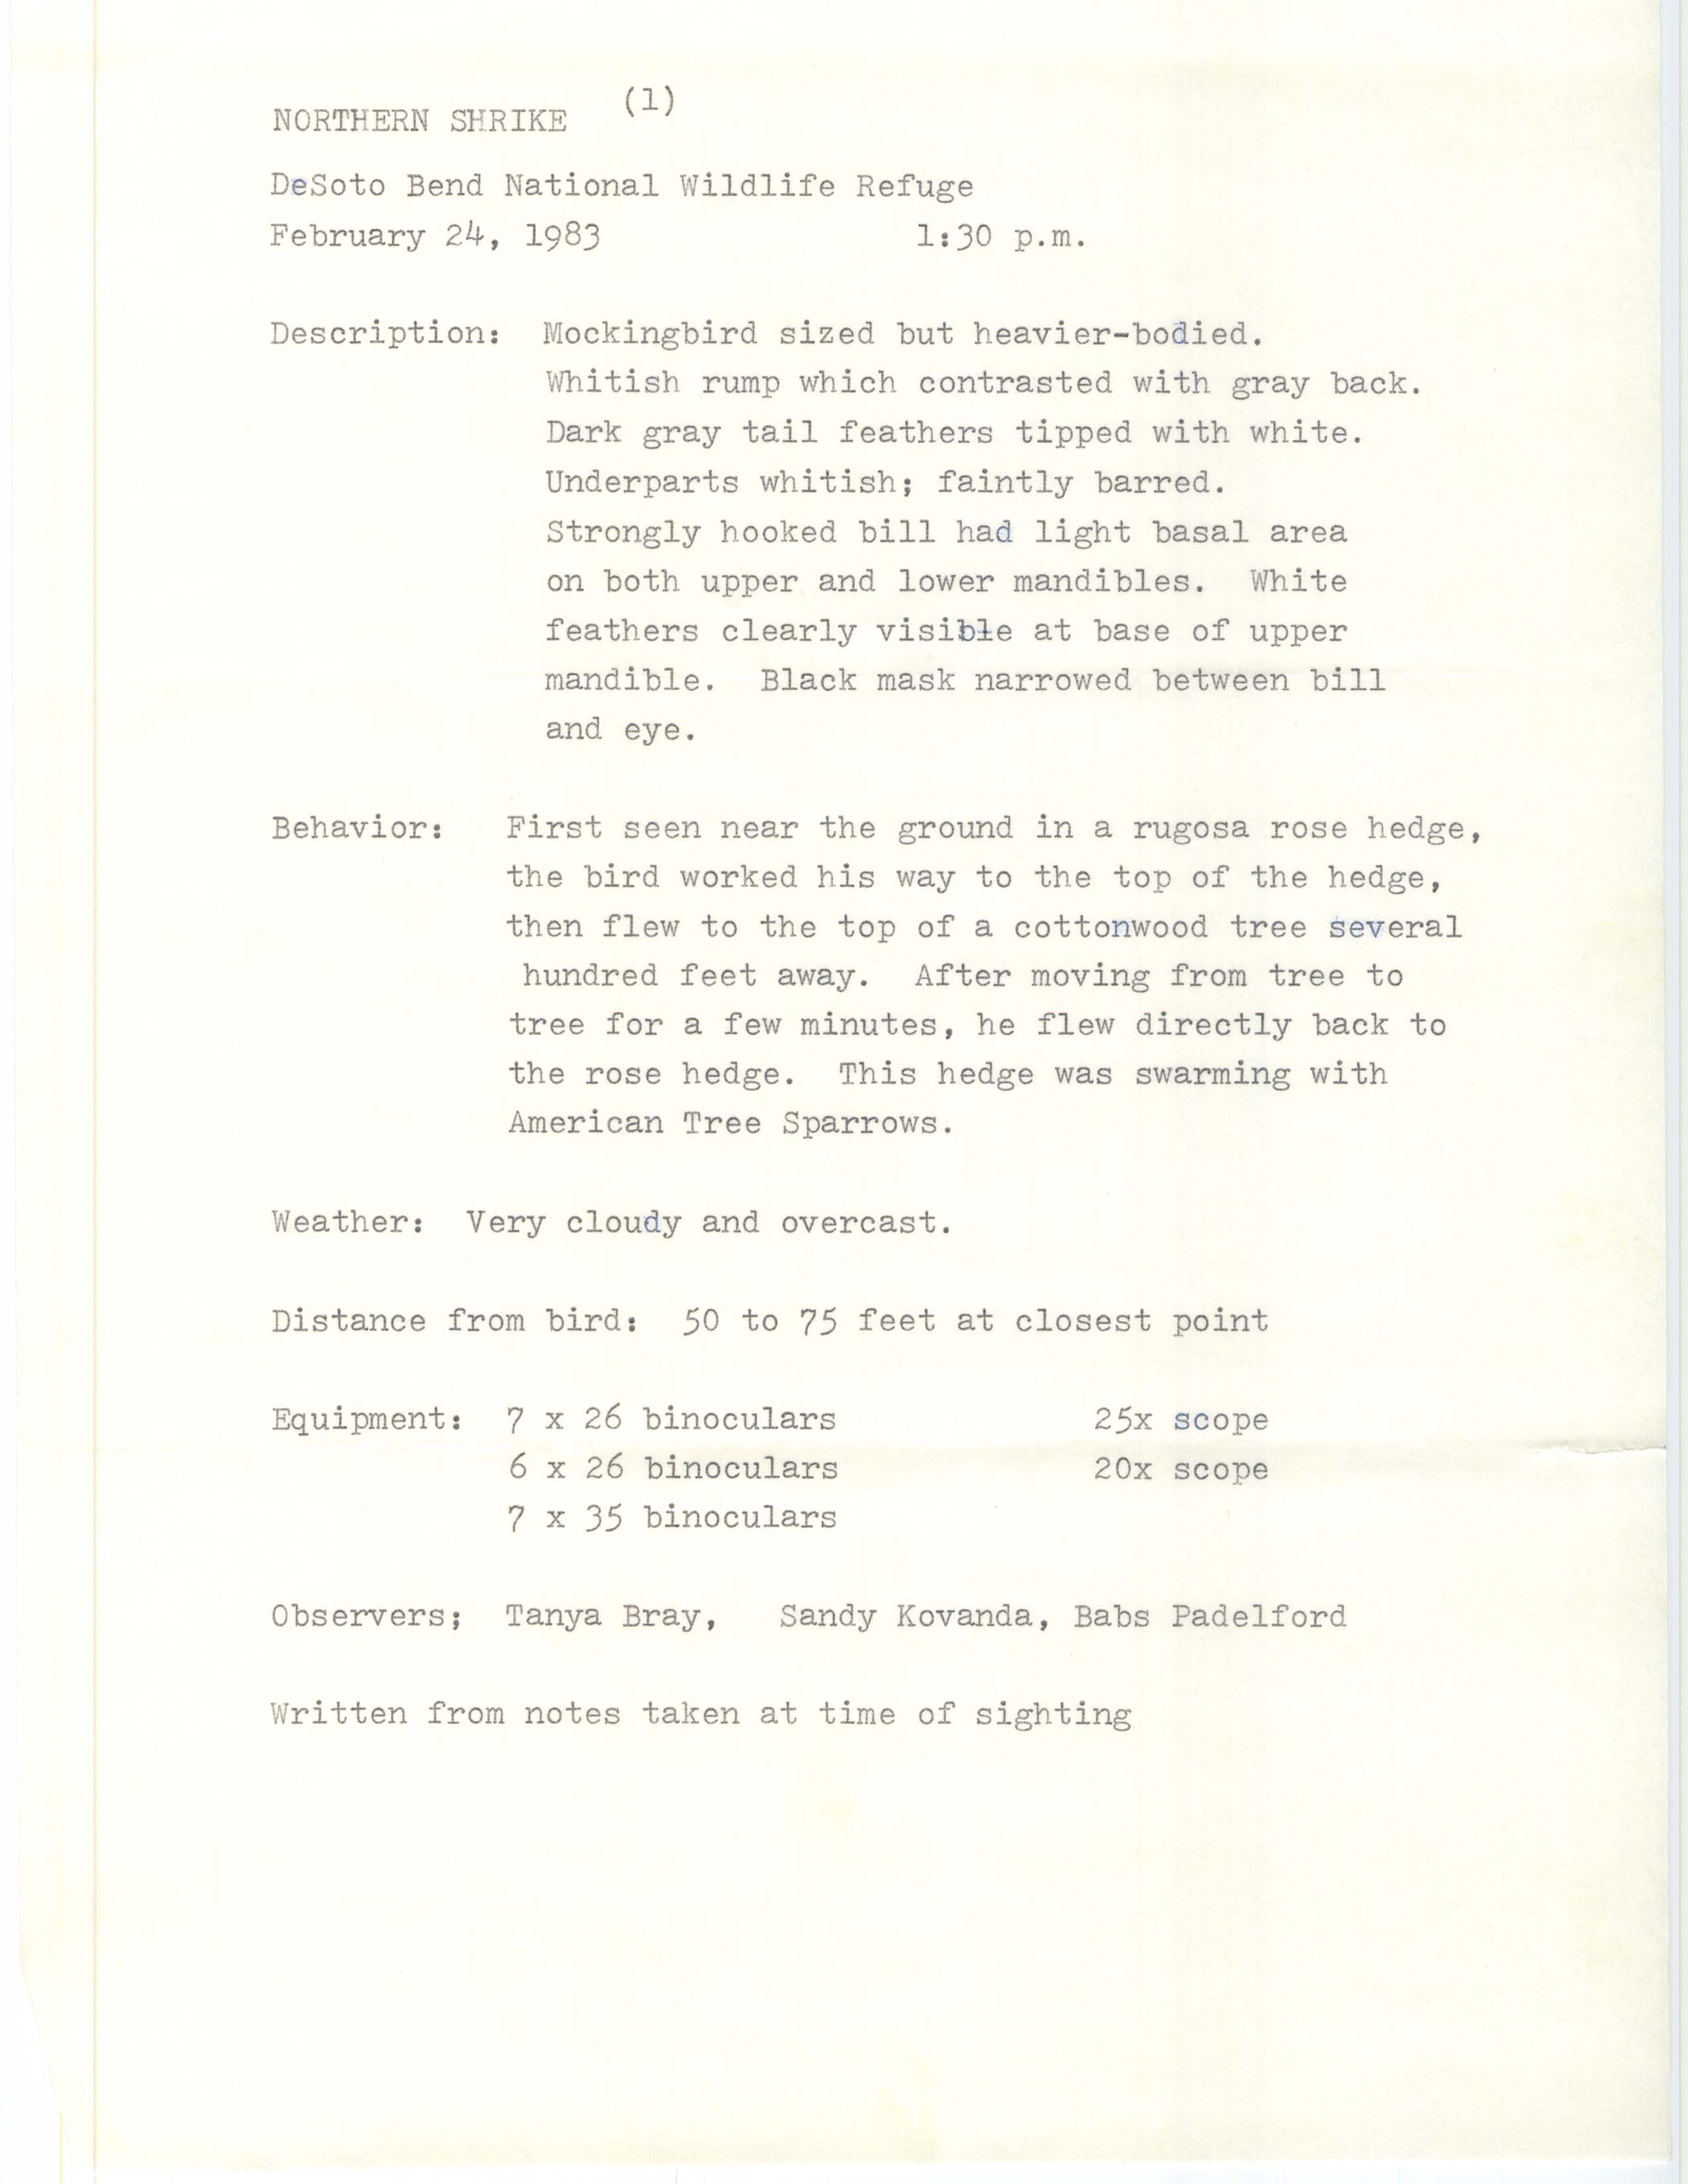 Rare bird documentation form for Northern Shrike at DeSoto Bend National Wildlife Refuge, 1983